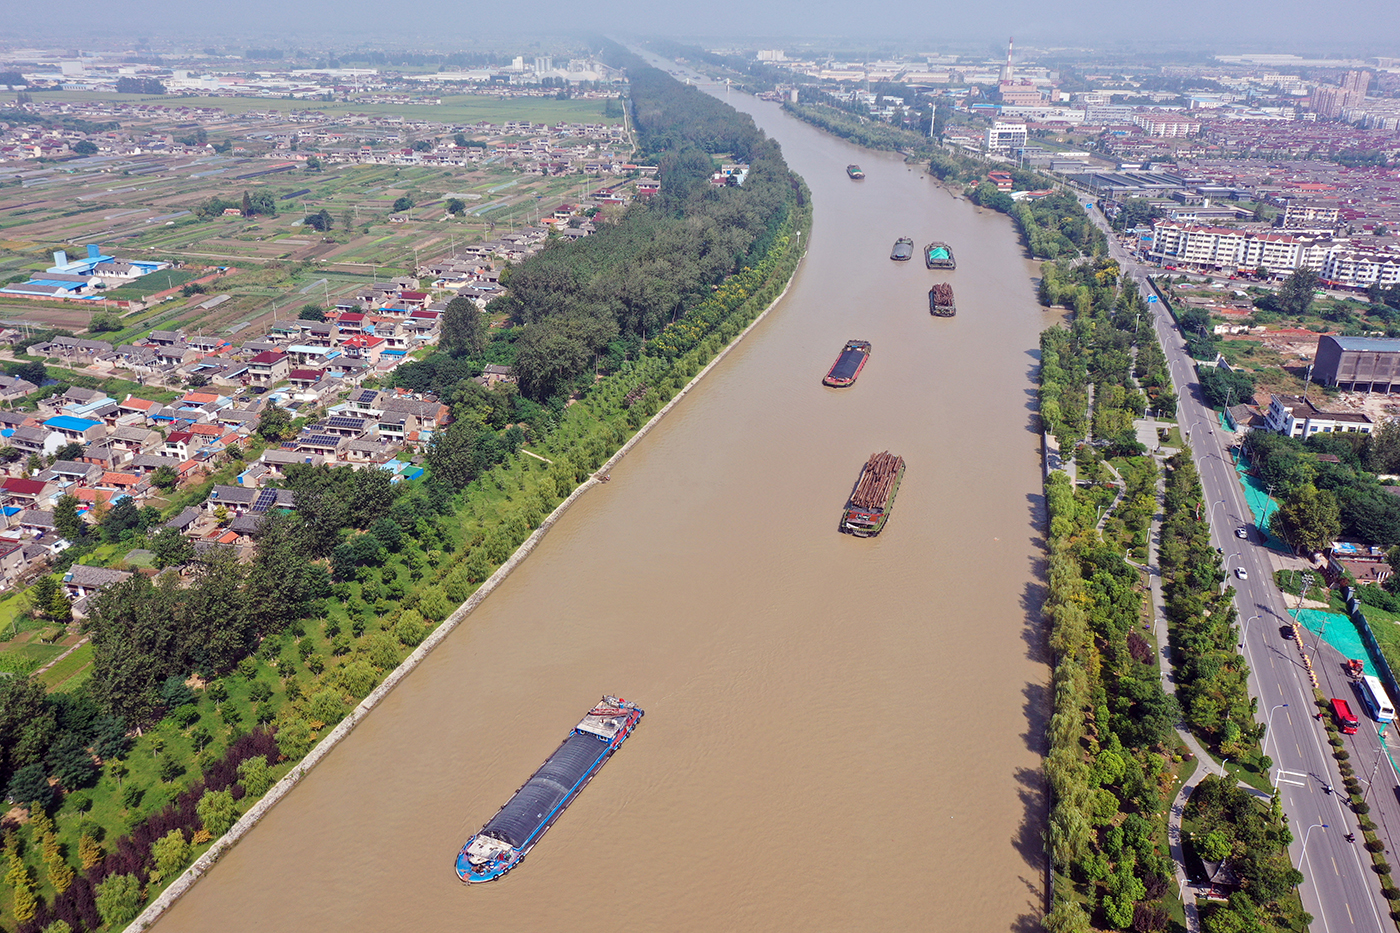 京杭运河跨长江图片图片